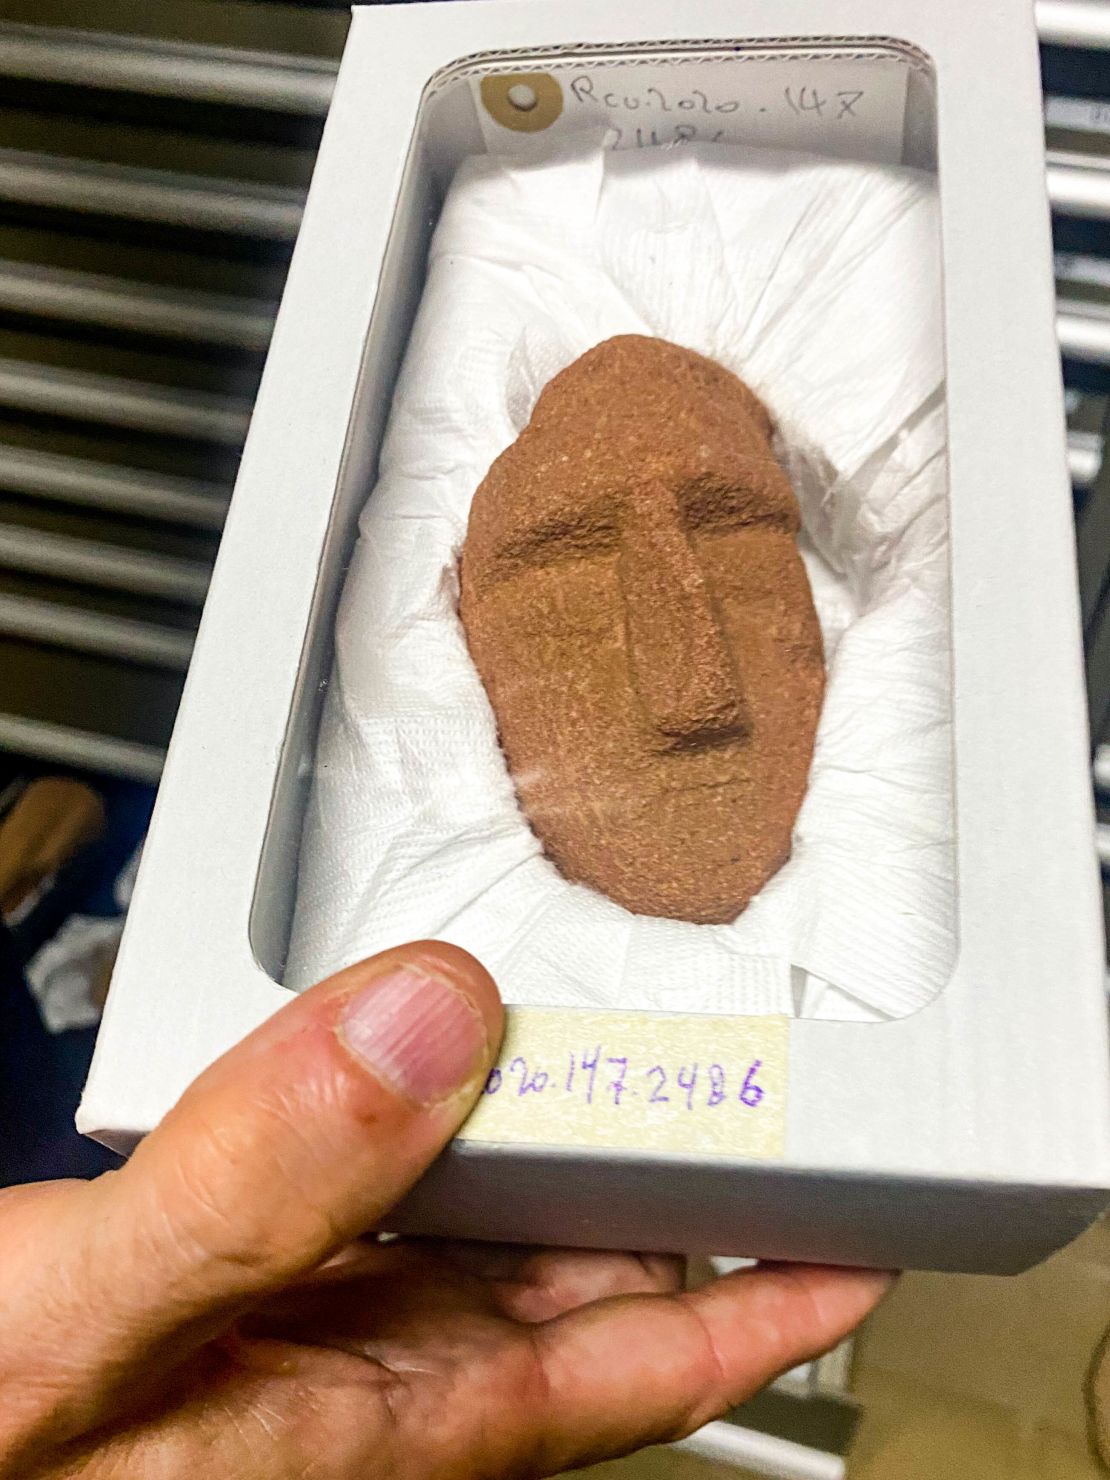 The head of a smashed figurine found near AlUla.